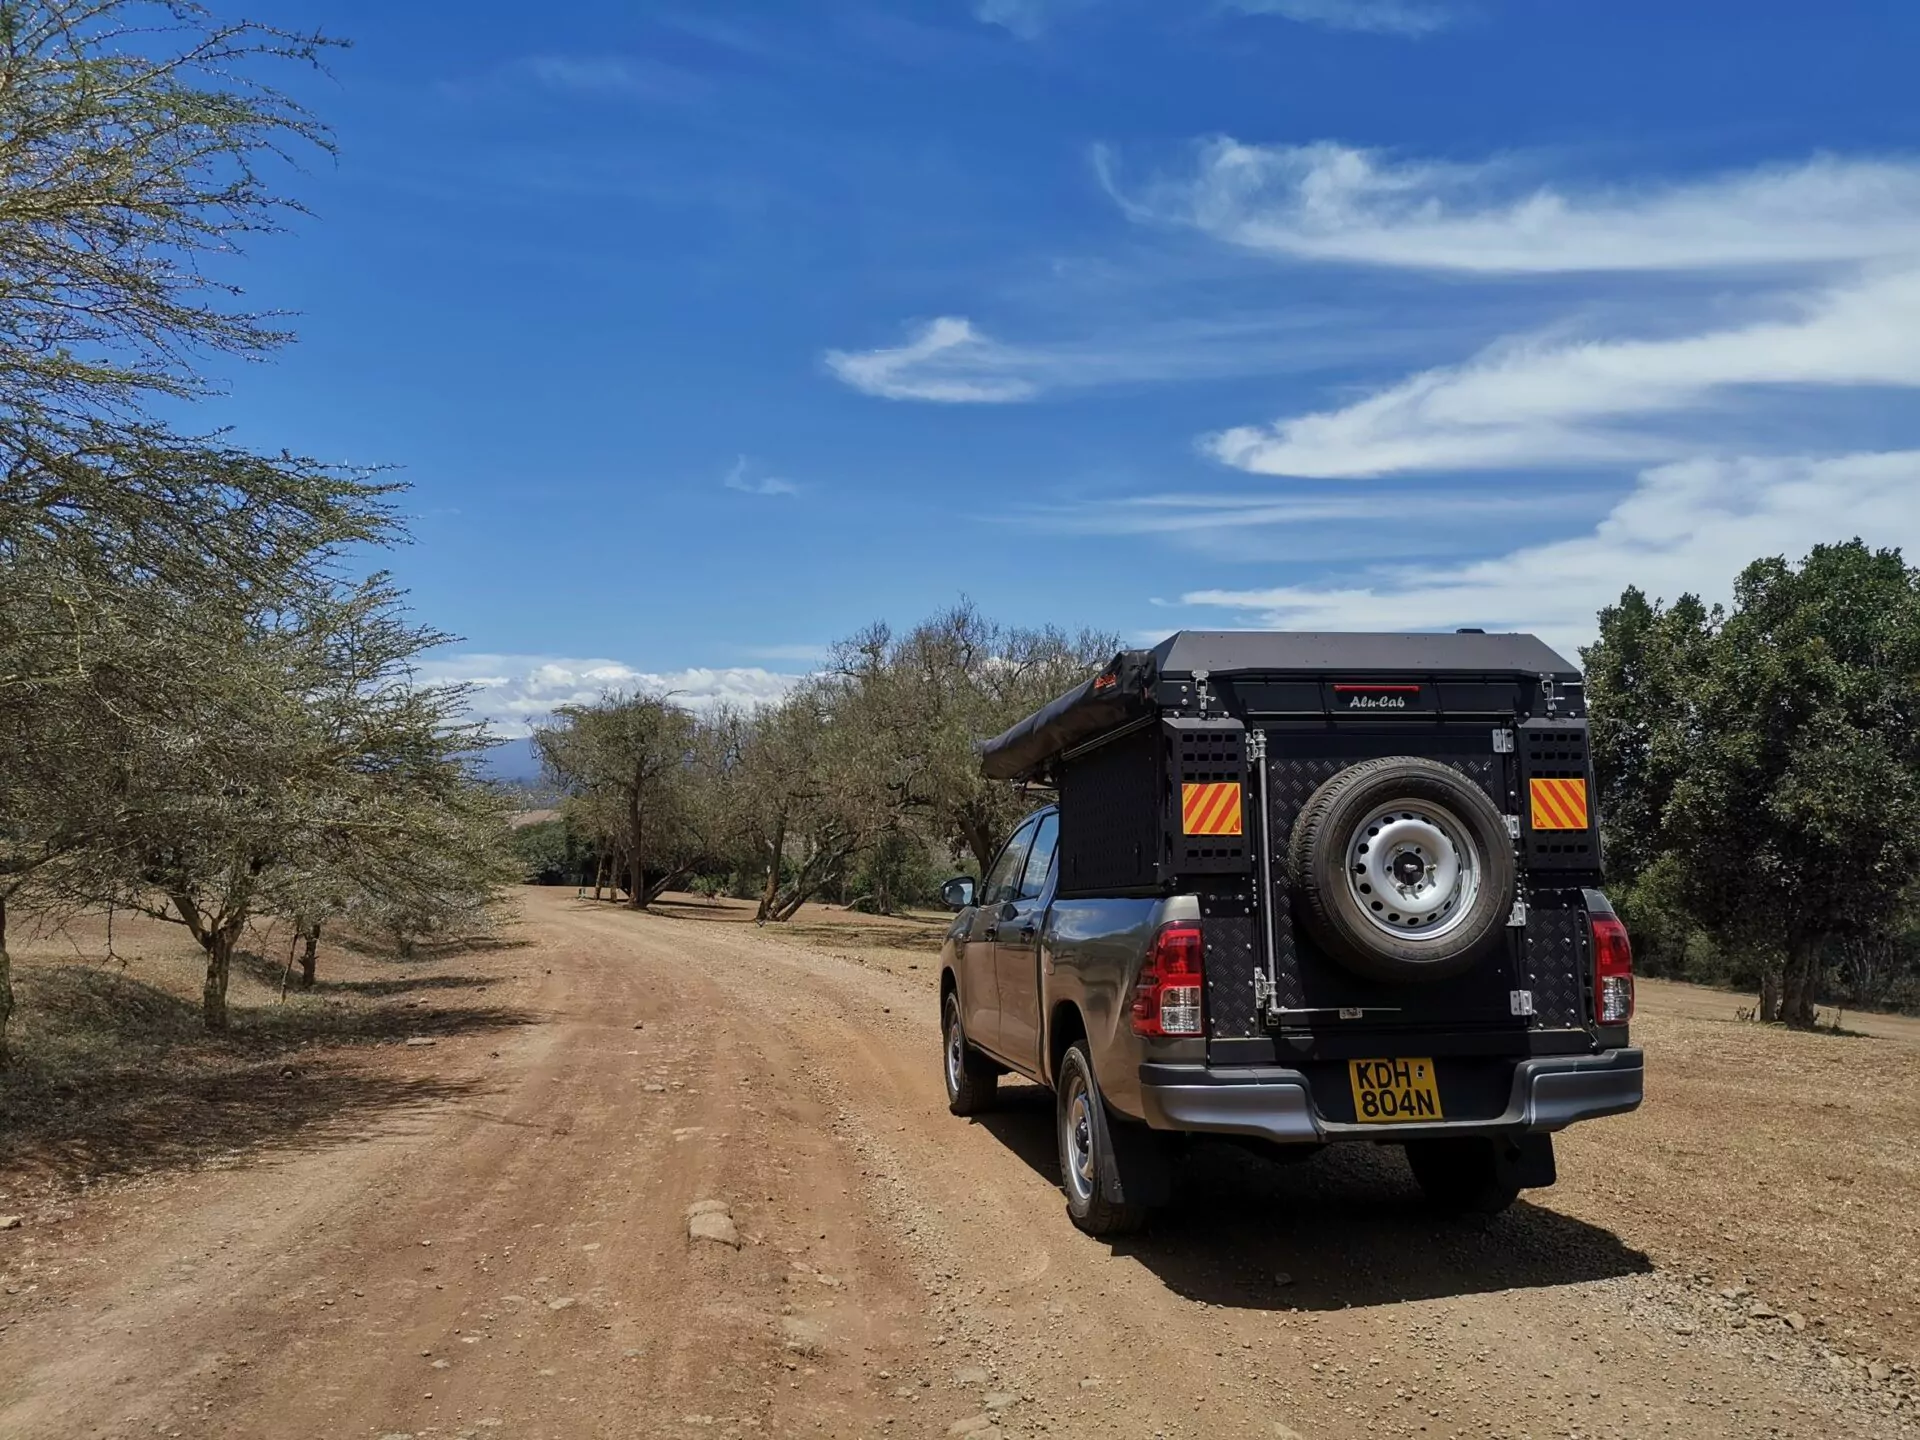 kenia_selbstfahrerreise_camper_on_tour_jeep_mit_aufsatz